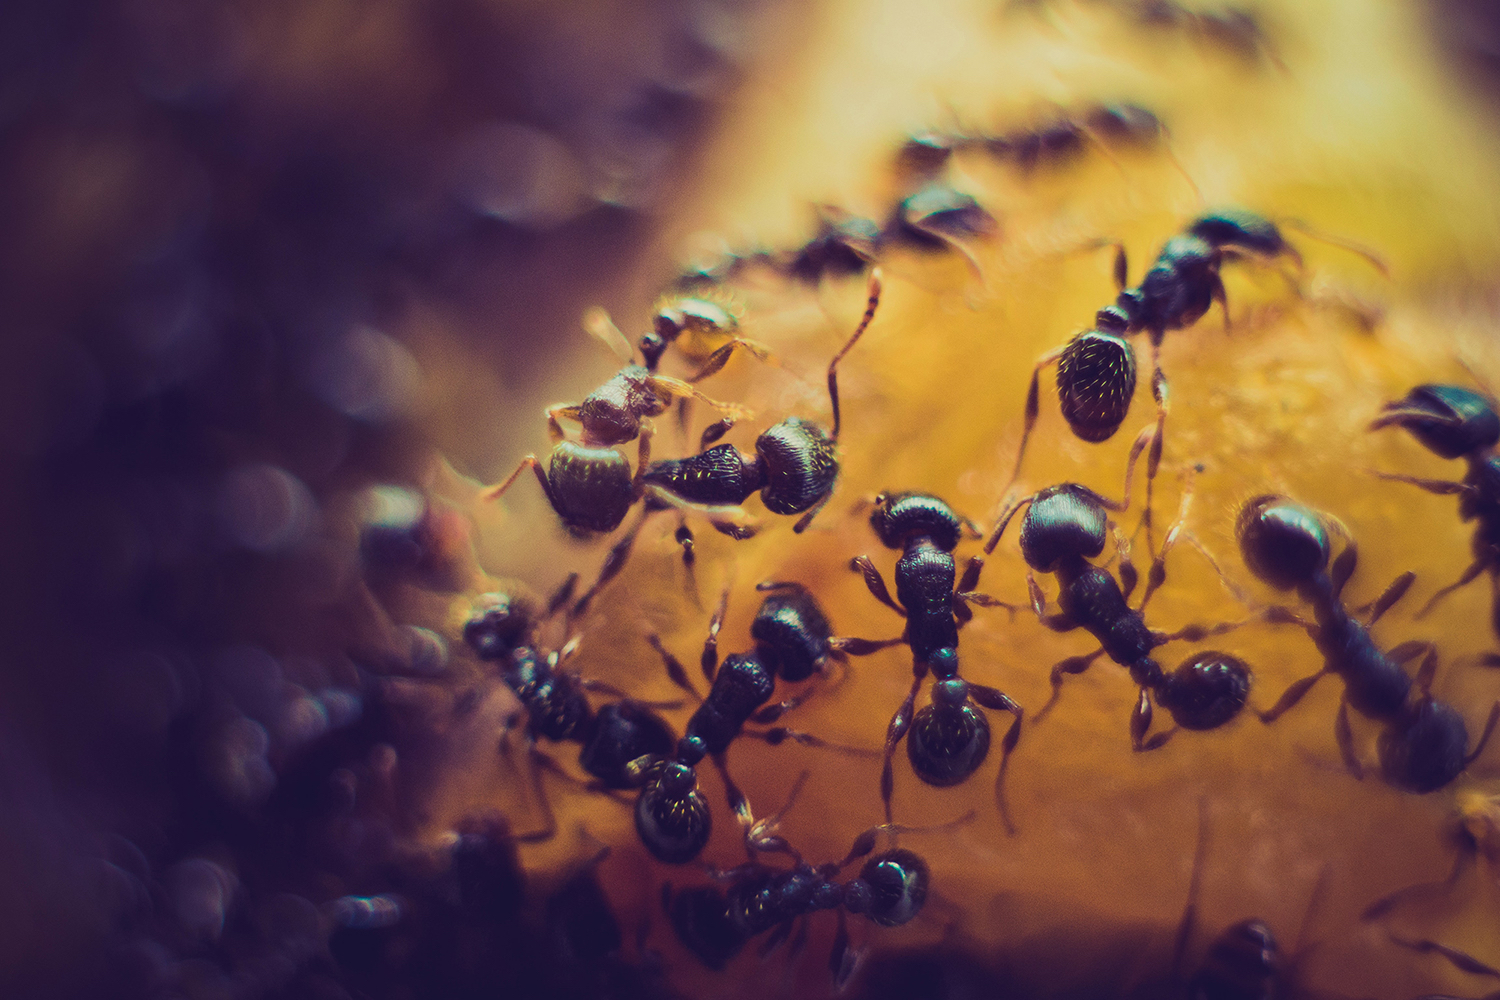 муравьи в фундаменте частного дома как избавиться